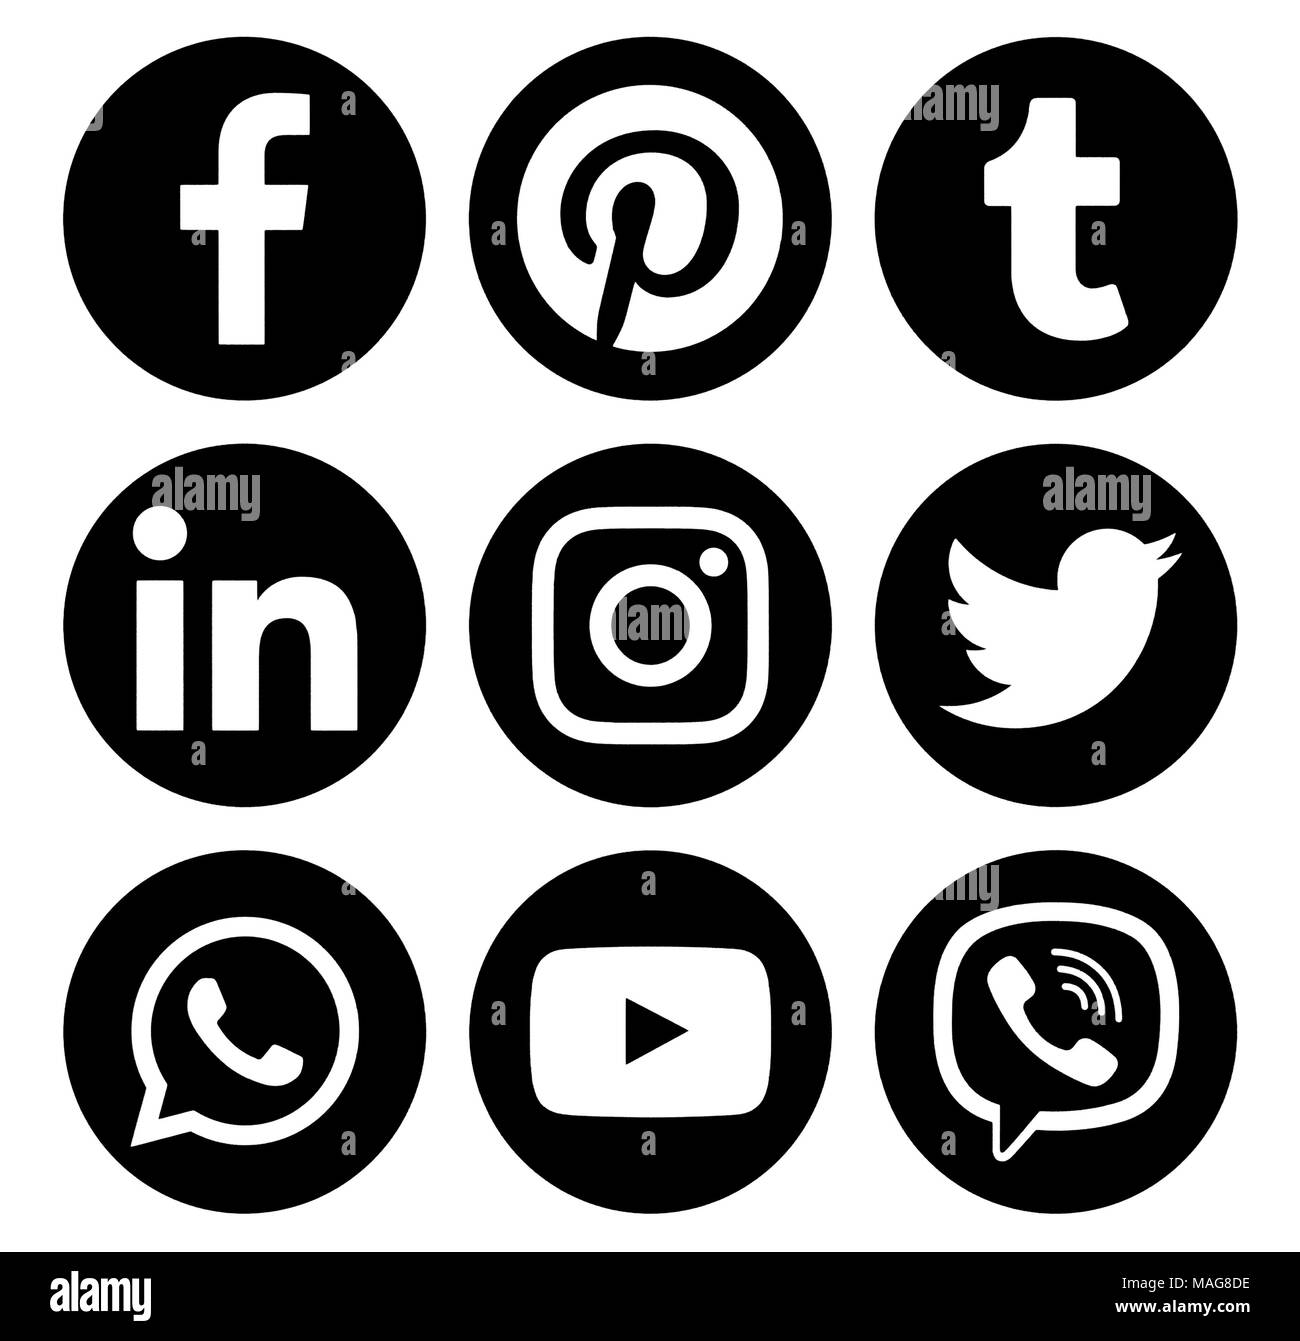 Kiew, Ukraine - Januar 16, 2018: Beliebte Kreis social media schwarz Logos auf Papier gedruckt: Facebook, Twitter, Instagram, Pöcking, LinkedIn, Viber, Stockfoto